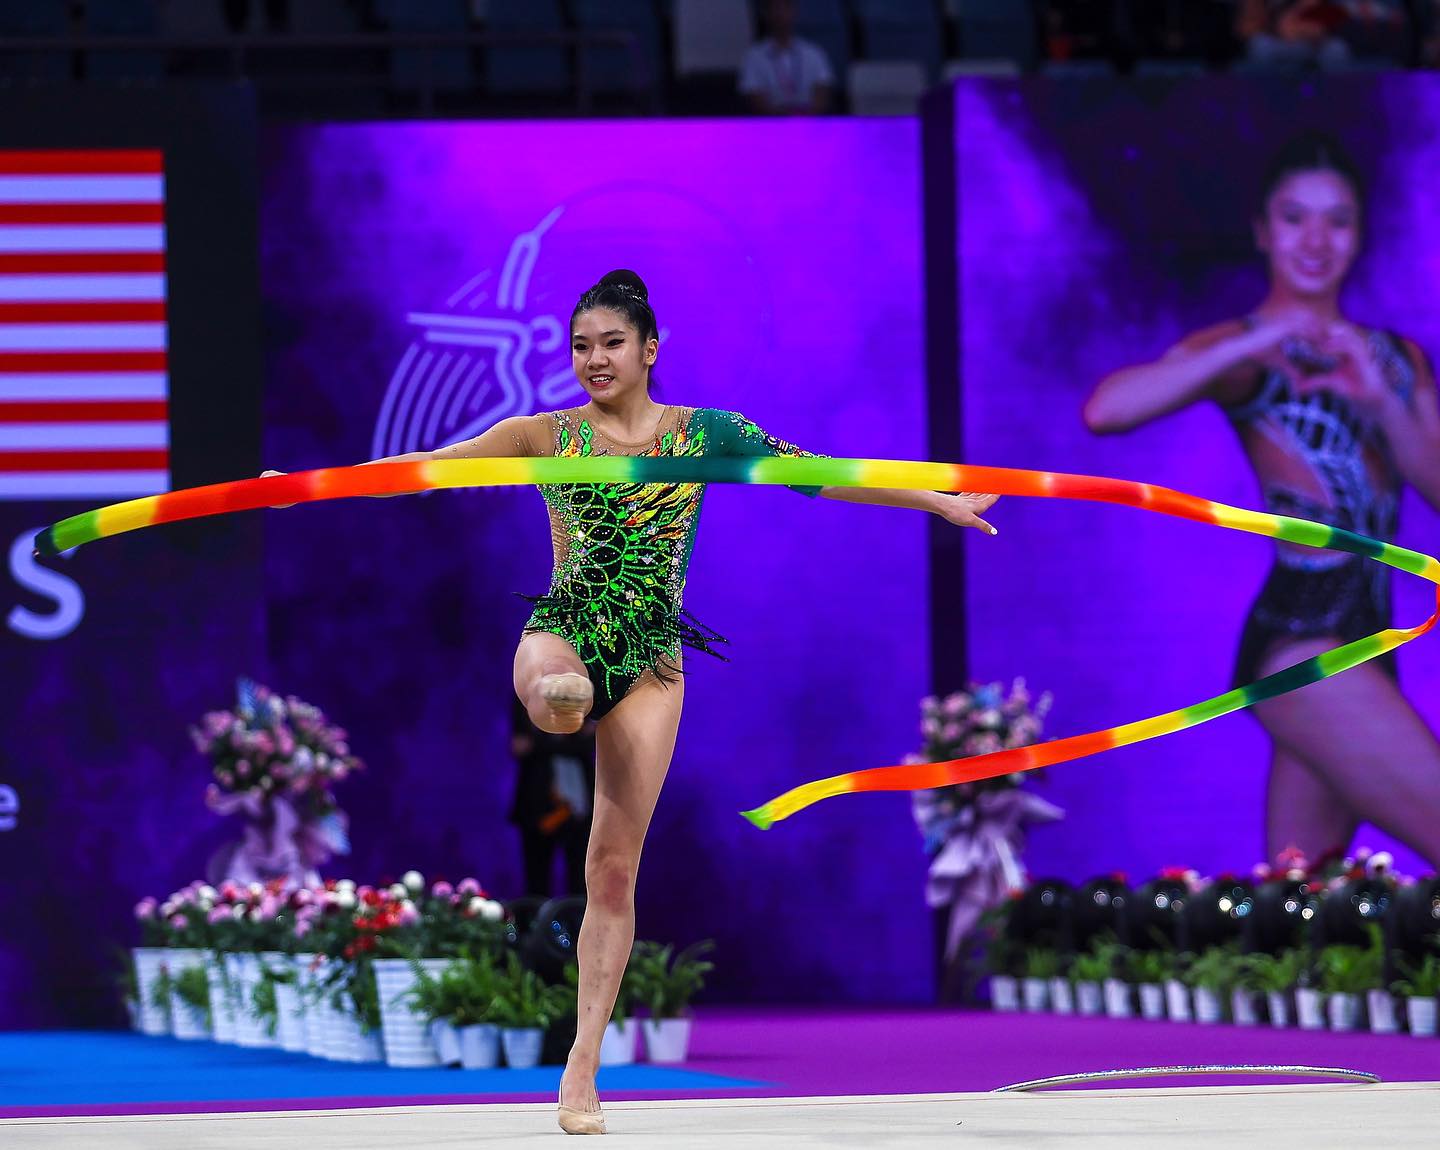 Joe Ee to hoop in Rhythmic Gymnastic Championships in Tashkent